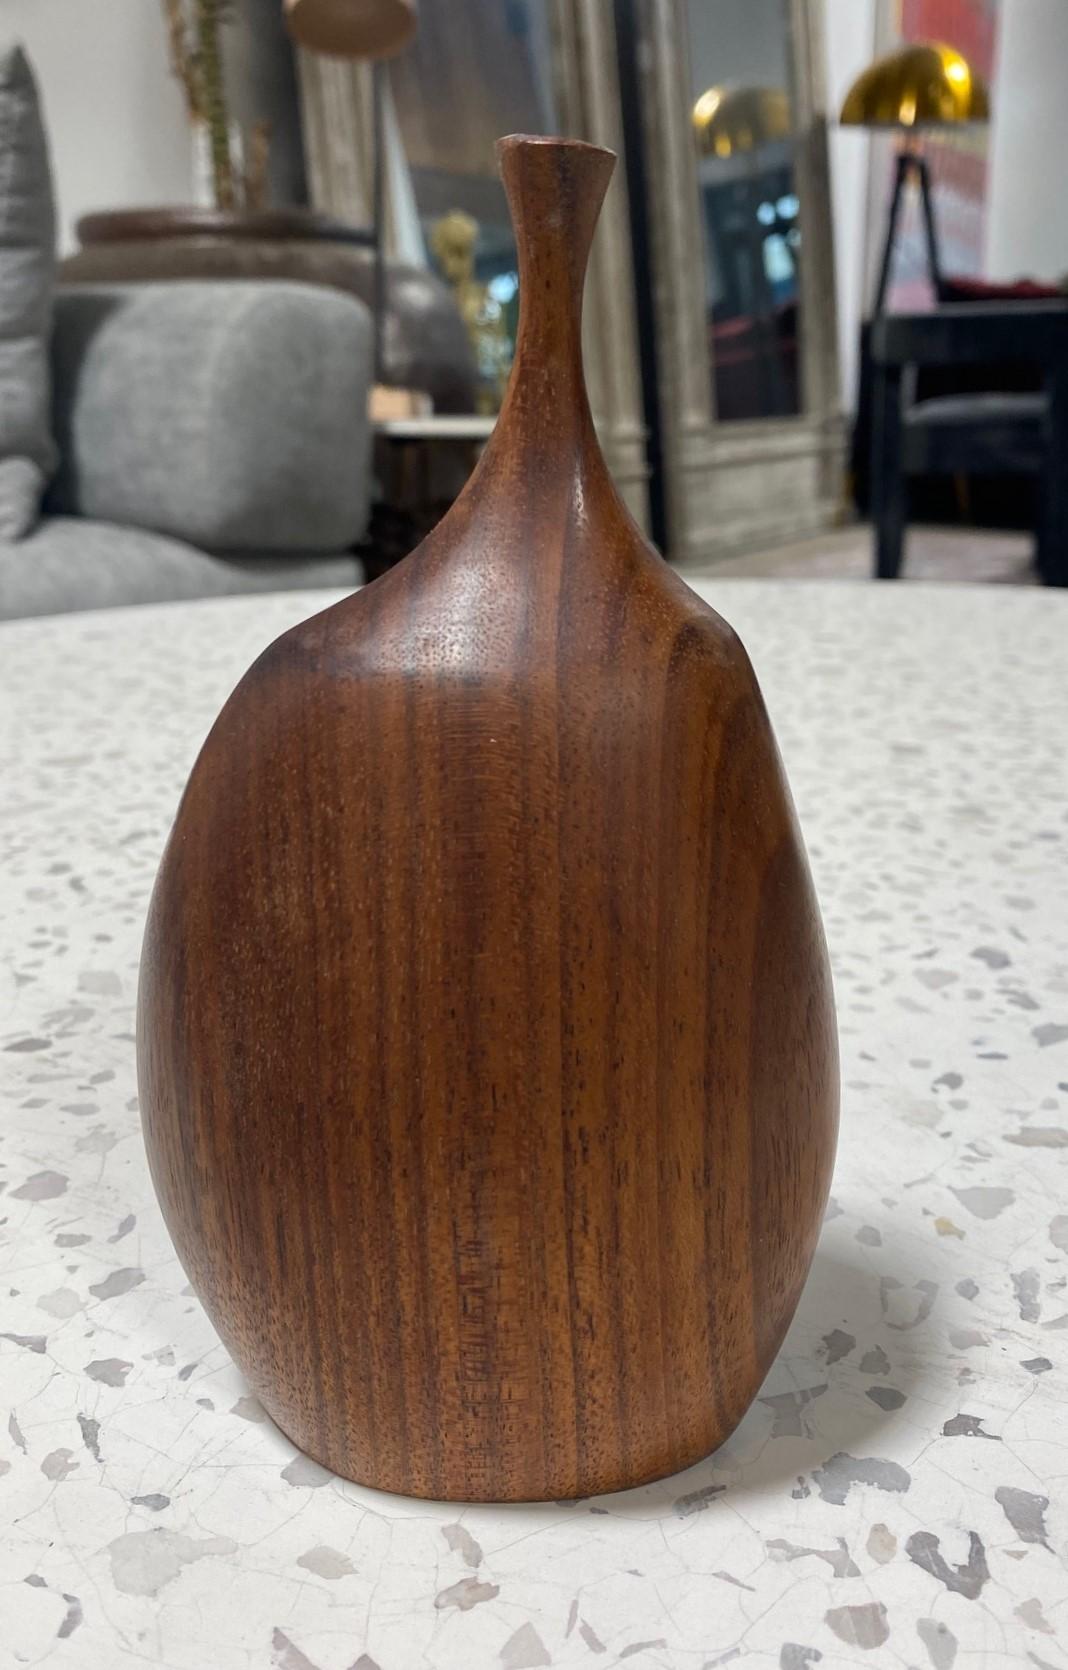 Un très beau vase en bois tourné et sculpté par le célèbre artiste/sculpteur américain Doug Ayers (Mendocino, CA). Le grain naturel et organique du bois est tout à fait spectaculaire dans cette pièce. 

Signé par Ayers sur la base.

L'œuvre d'Ayers